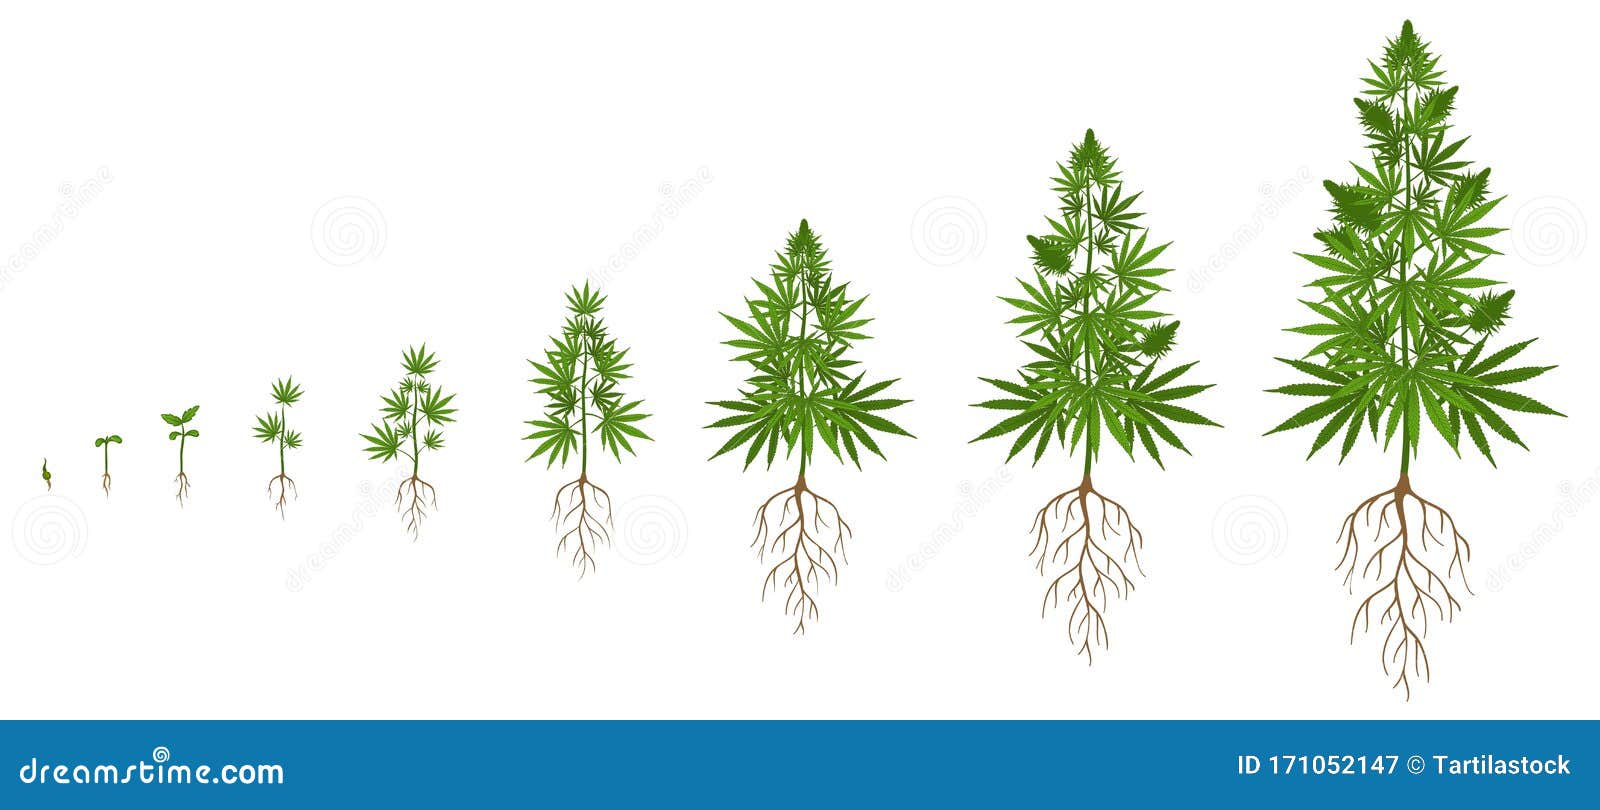 Стадии развития марихуаны как правильно посадить семечки конопли